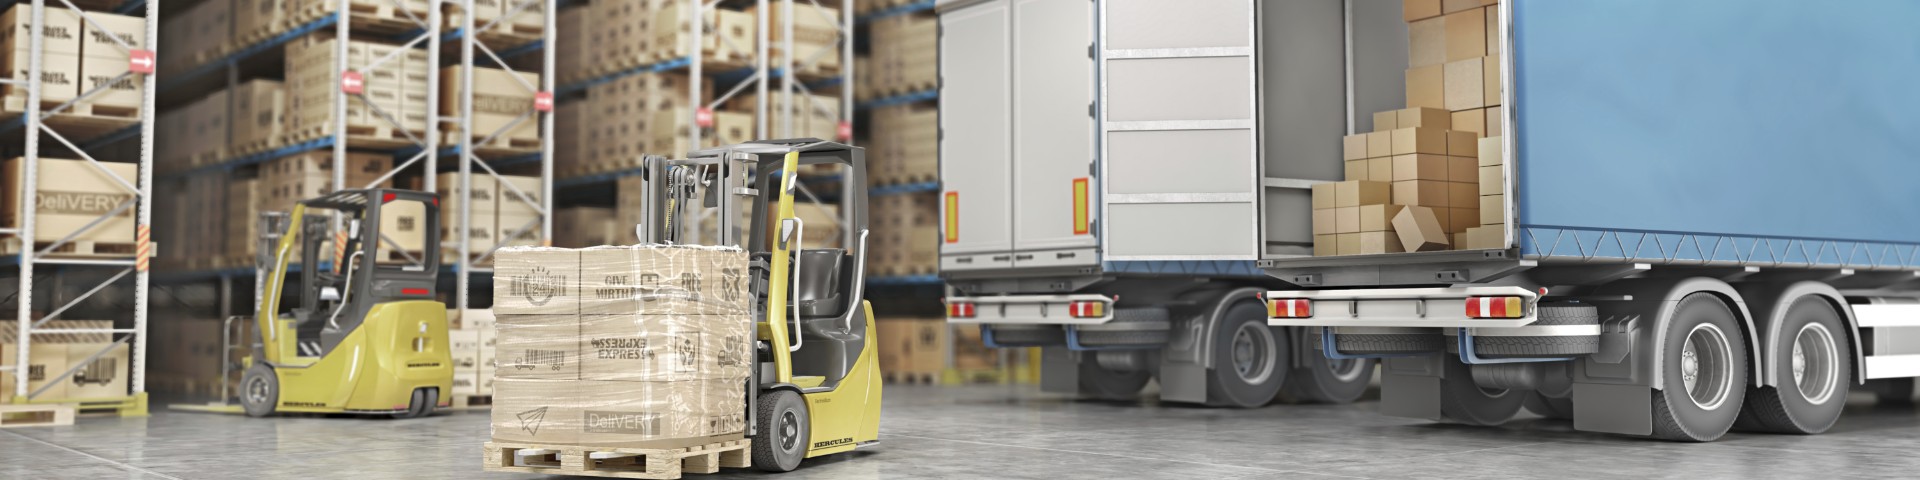 Truck-Transport von Waren und Paketen - Supplier in Stock